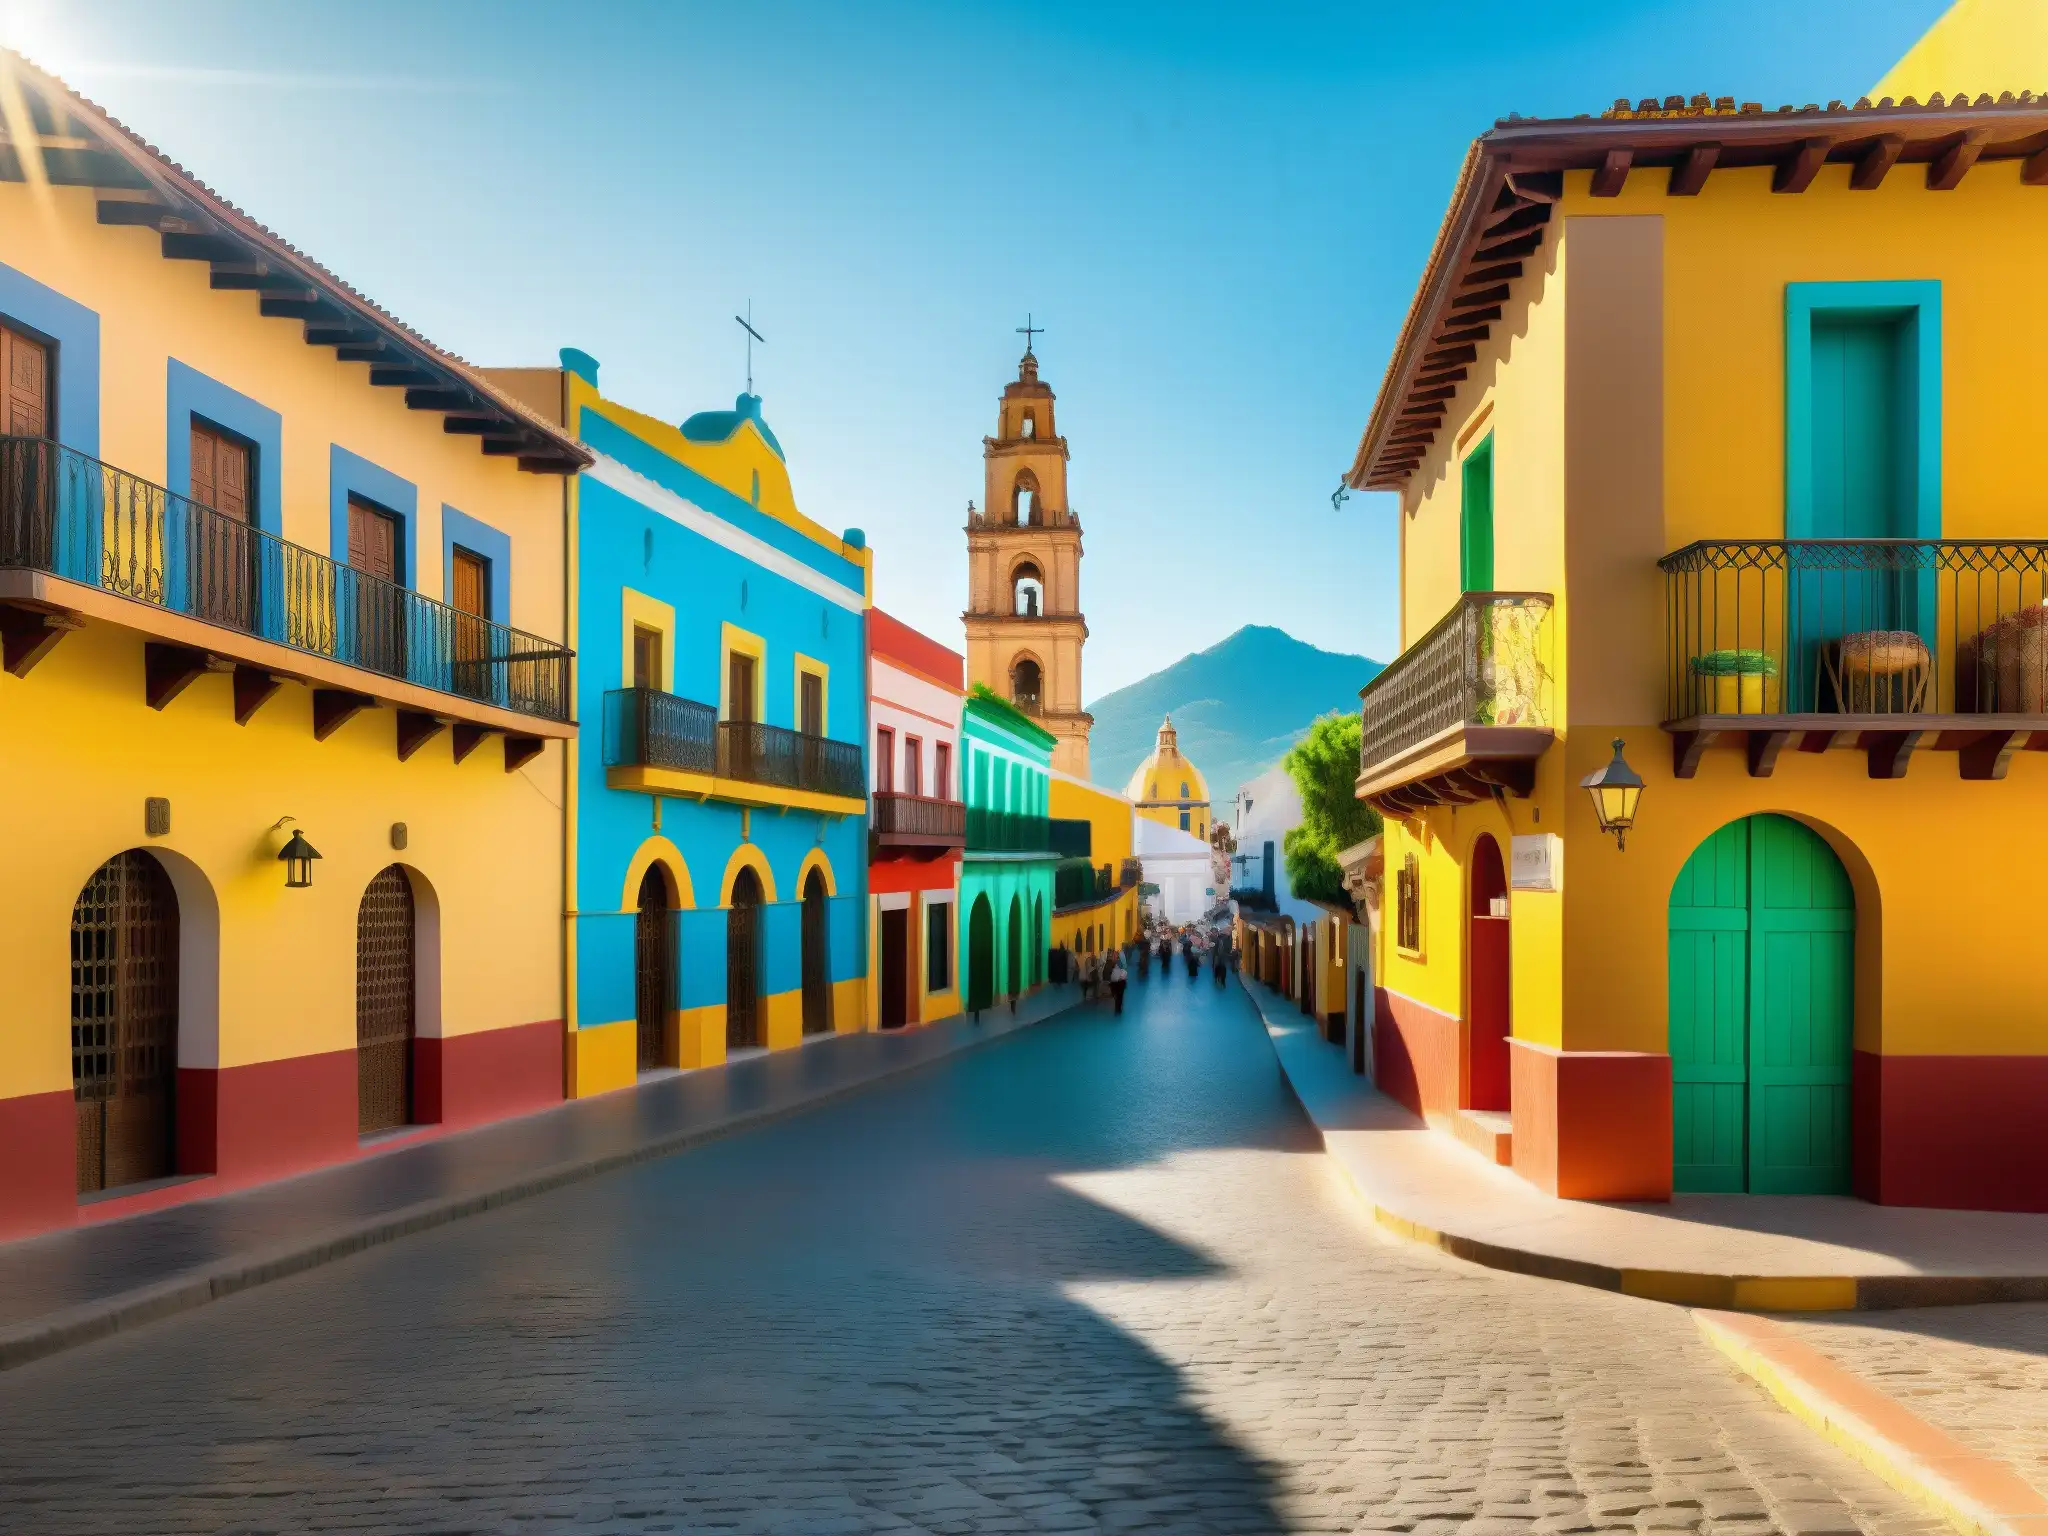 Una pintoresca vista de La Mulata de Córdoba México Colonial, con sus calles empedradas, arquitectura colonial y vida local vibrante